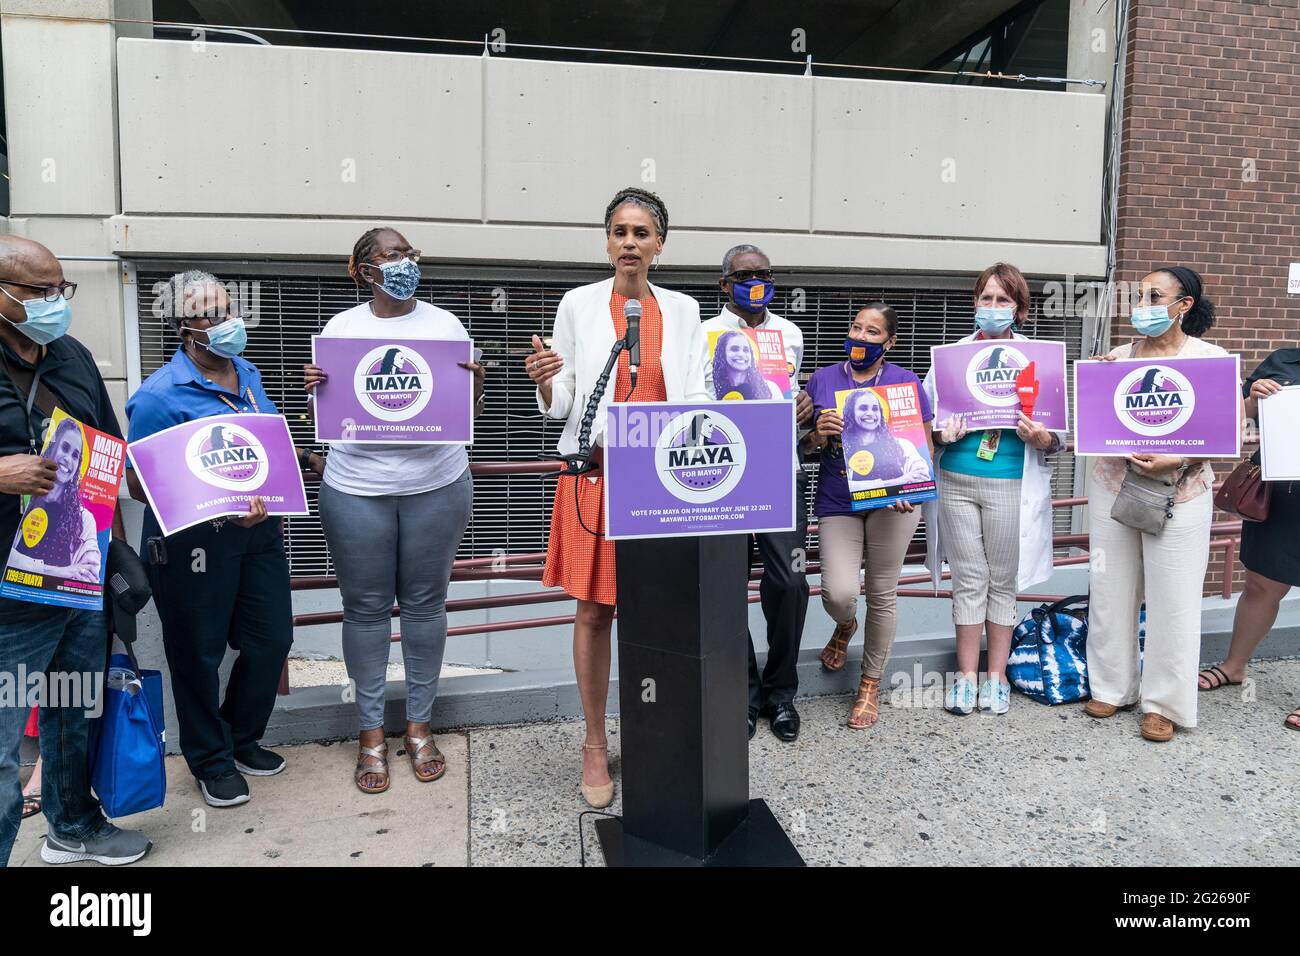 New York, NY - 8. Juni 2021: Die Bürgermeisterin Maya Wiley hält eine Pressekonferenz ab, um den Universal Health Coverage Plan im Montefiore Medical Center in der Bronx bekannt zu geben Stockfoto